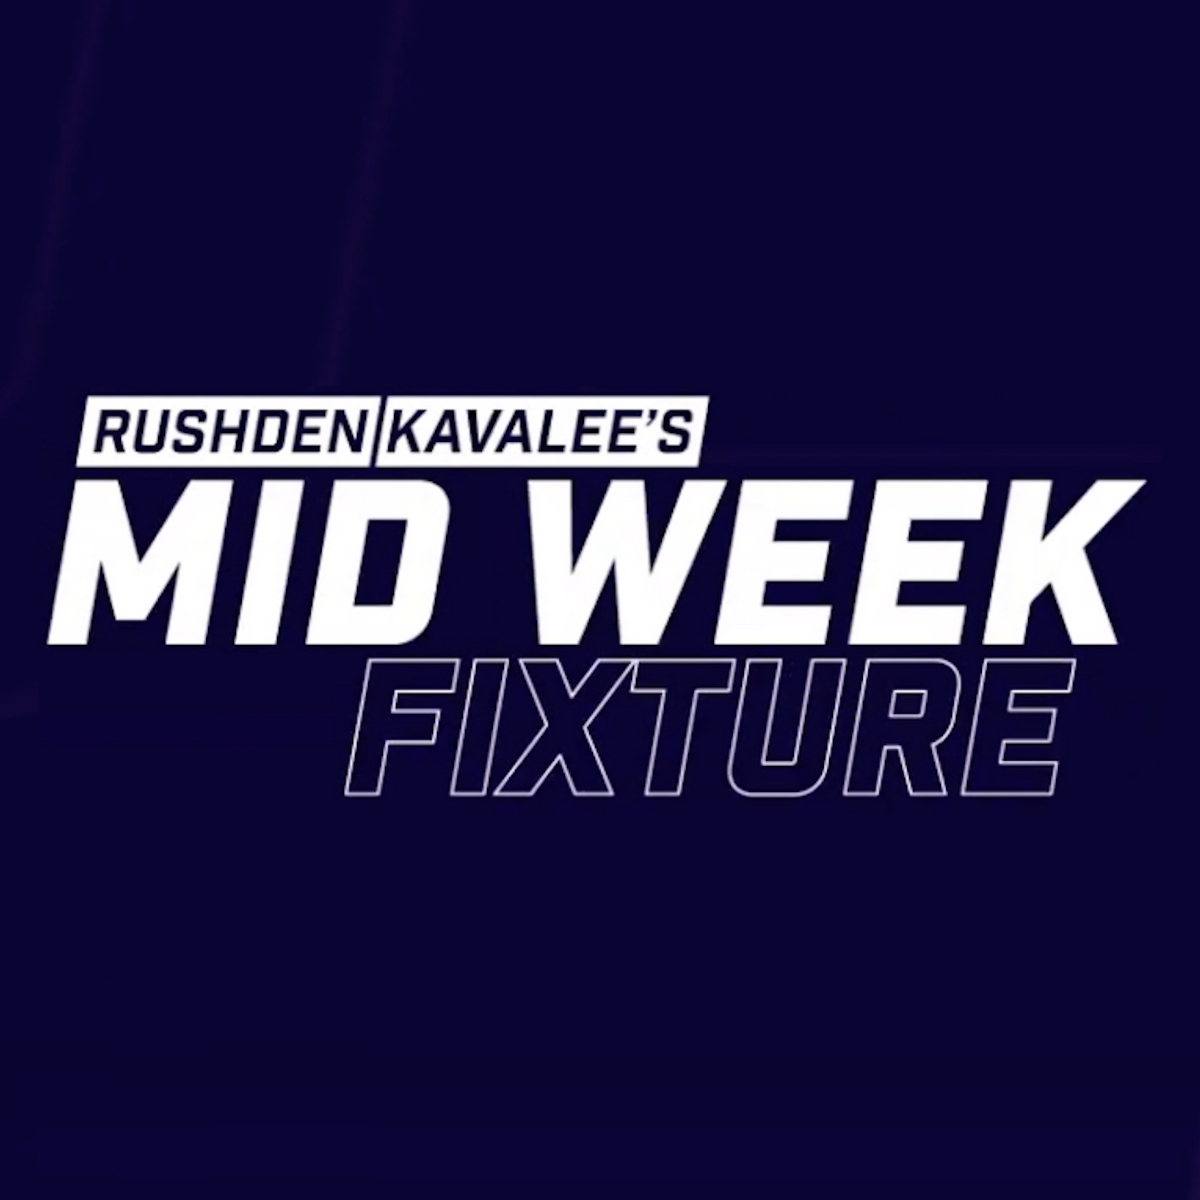 NEW POD: Rushden / Kavalee's Mid Week Fixture - 8 October 2020